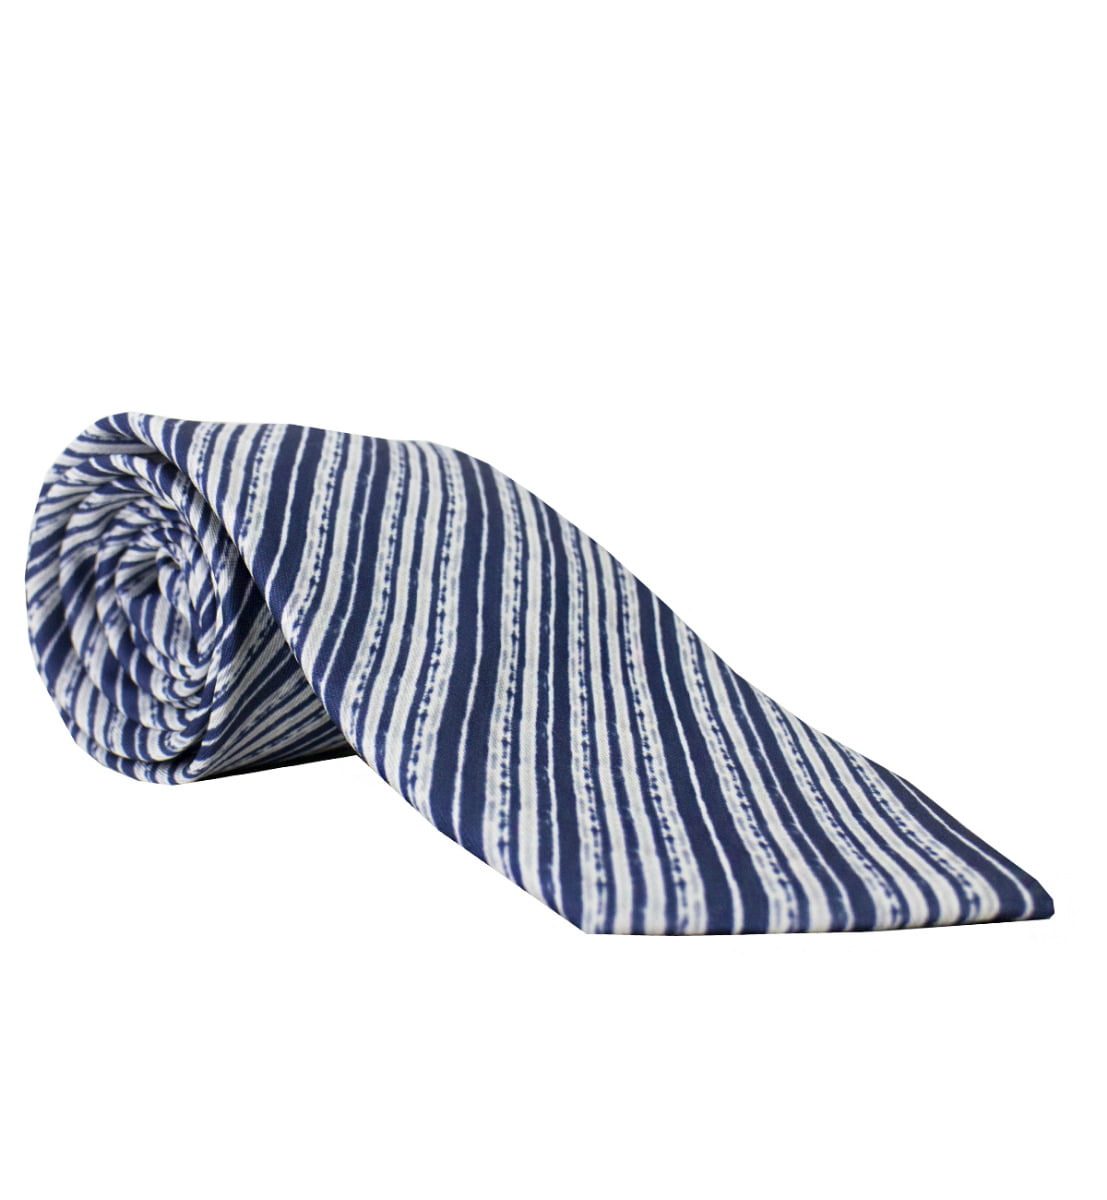 Cravatta uomo blu fantasia righe diagonali bianche compresa di pochette abbinata